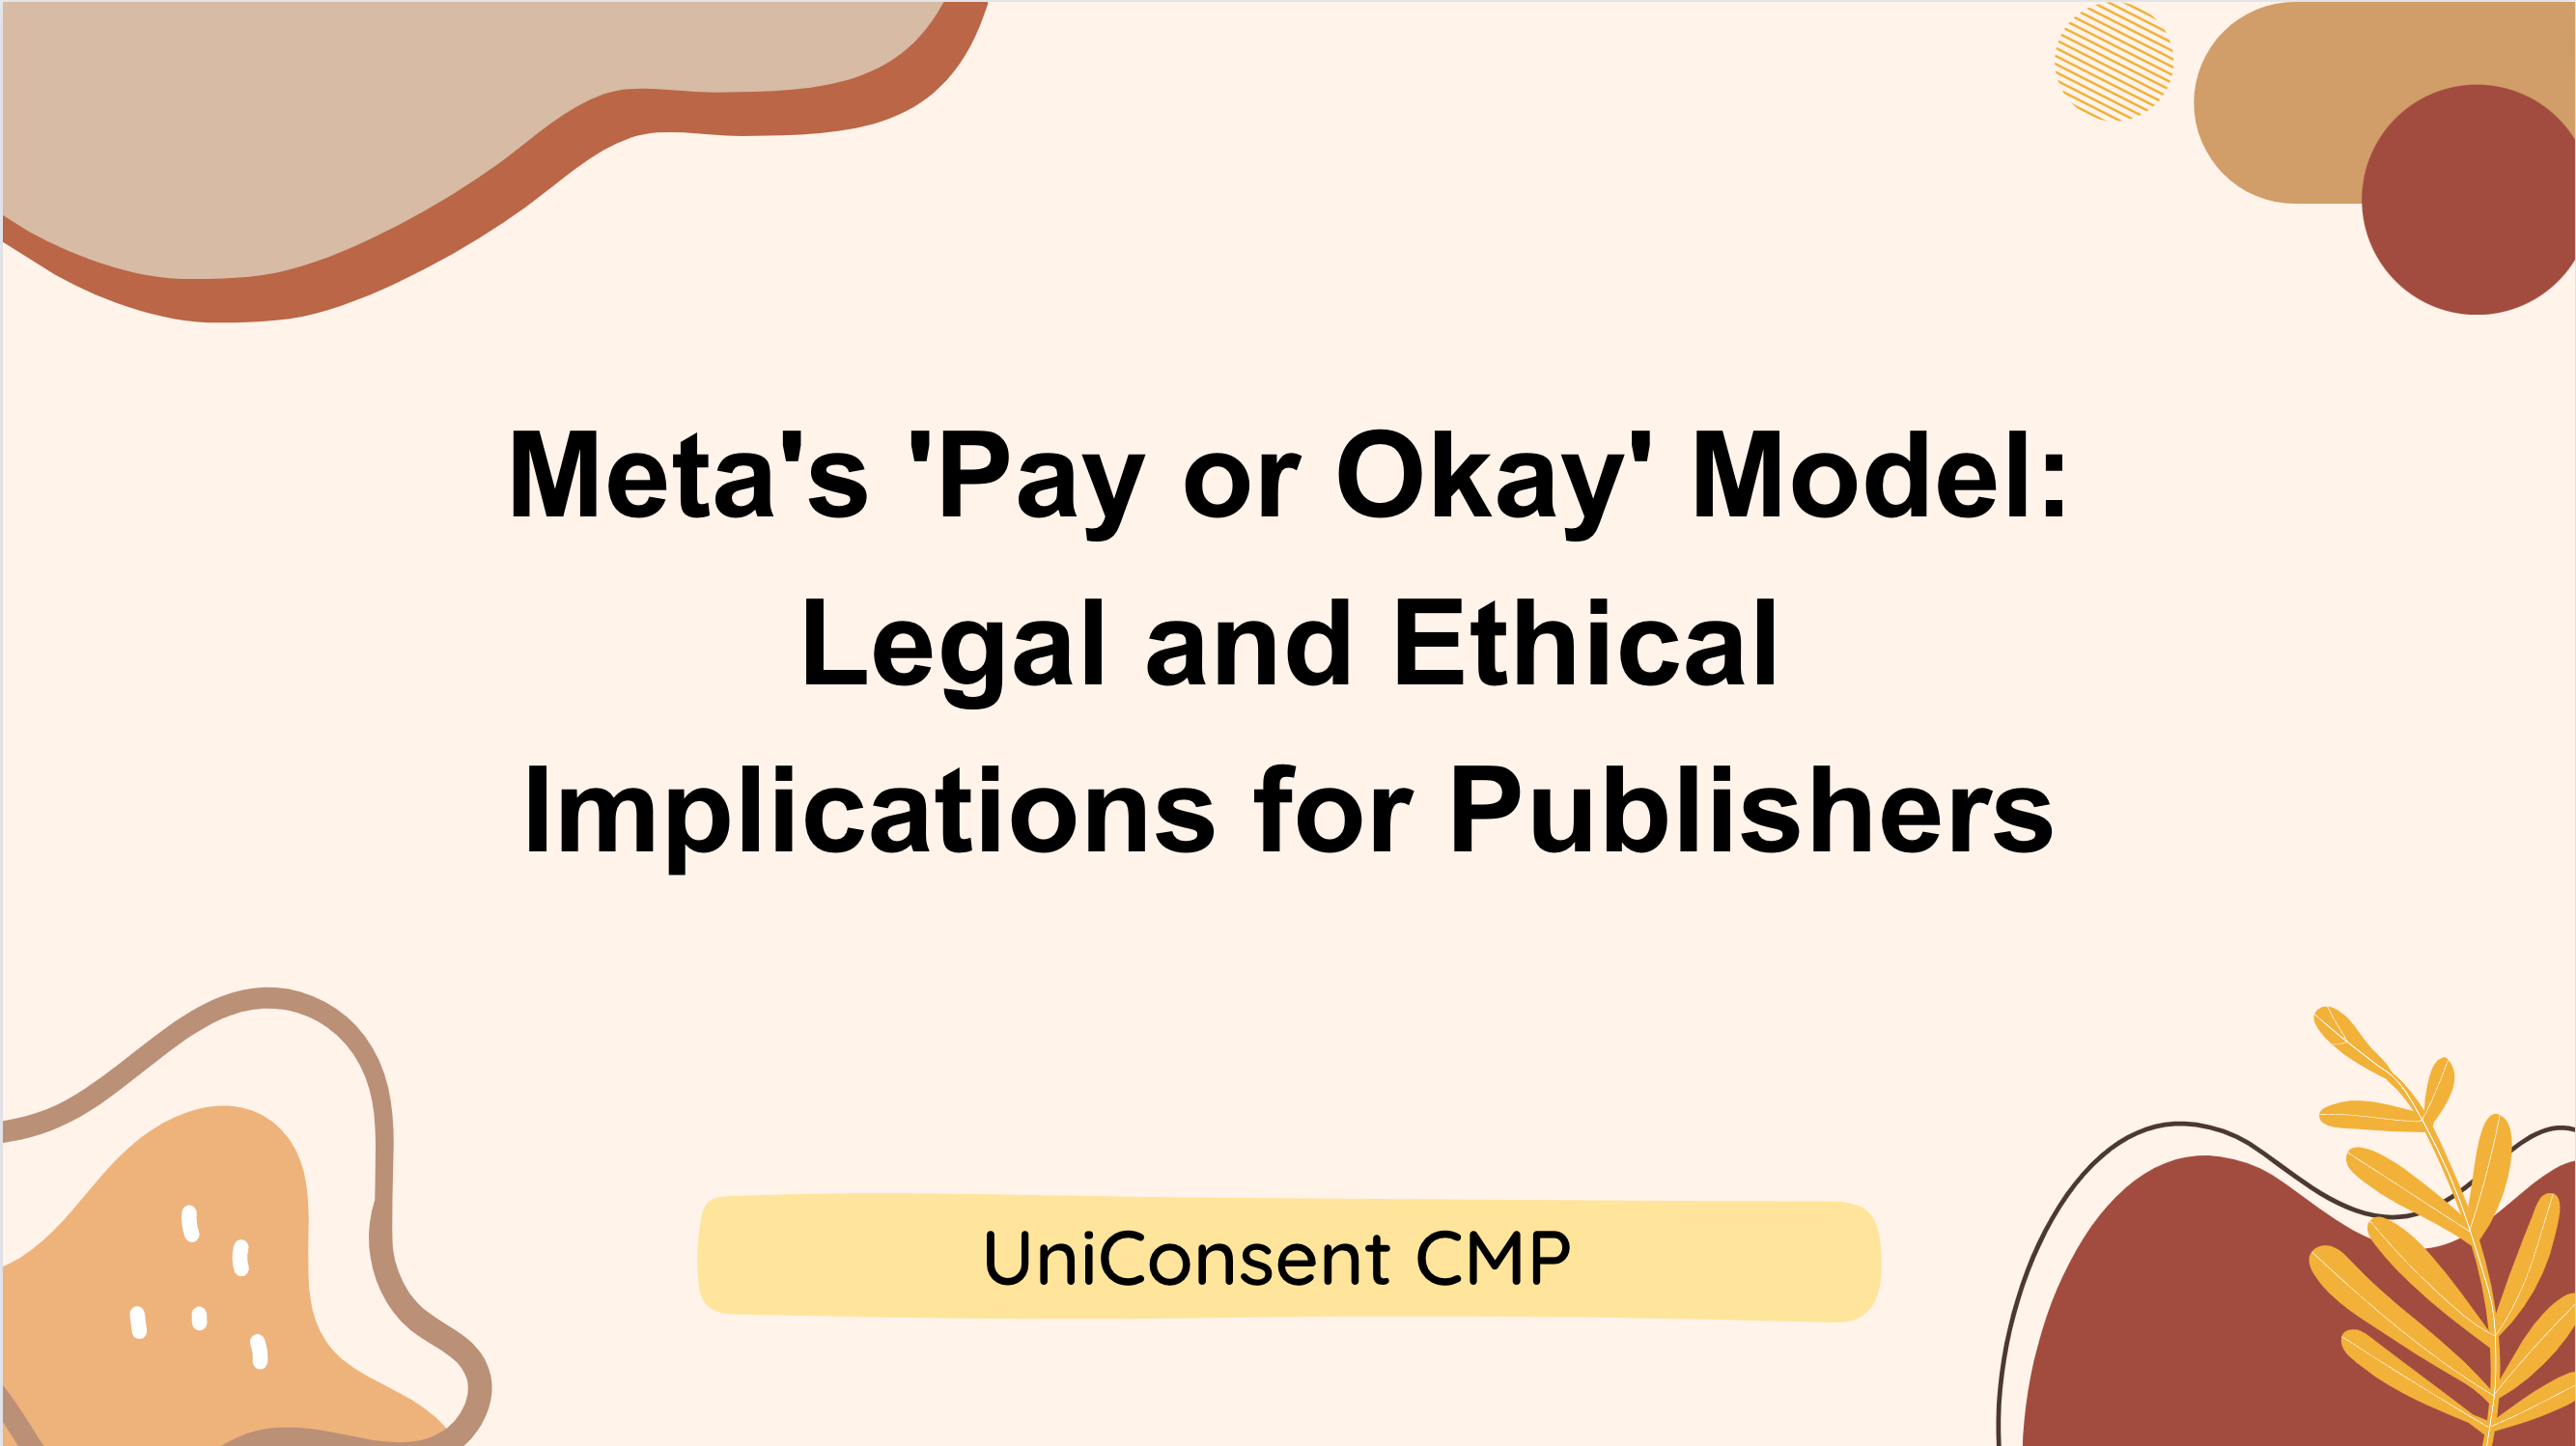 Le modèle "Pay or Okay" de Meta : Implications juridiques et éthiques pour les éditeurs